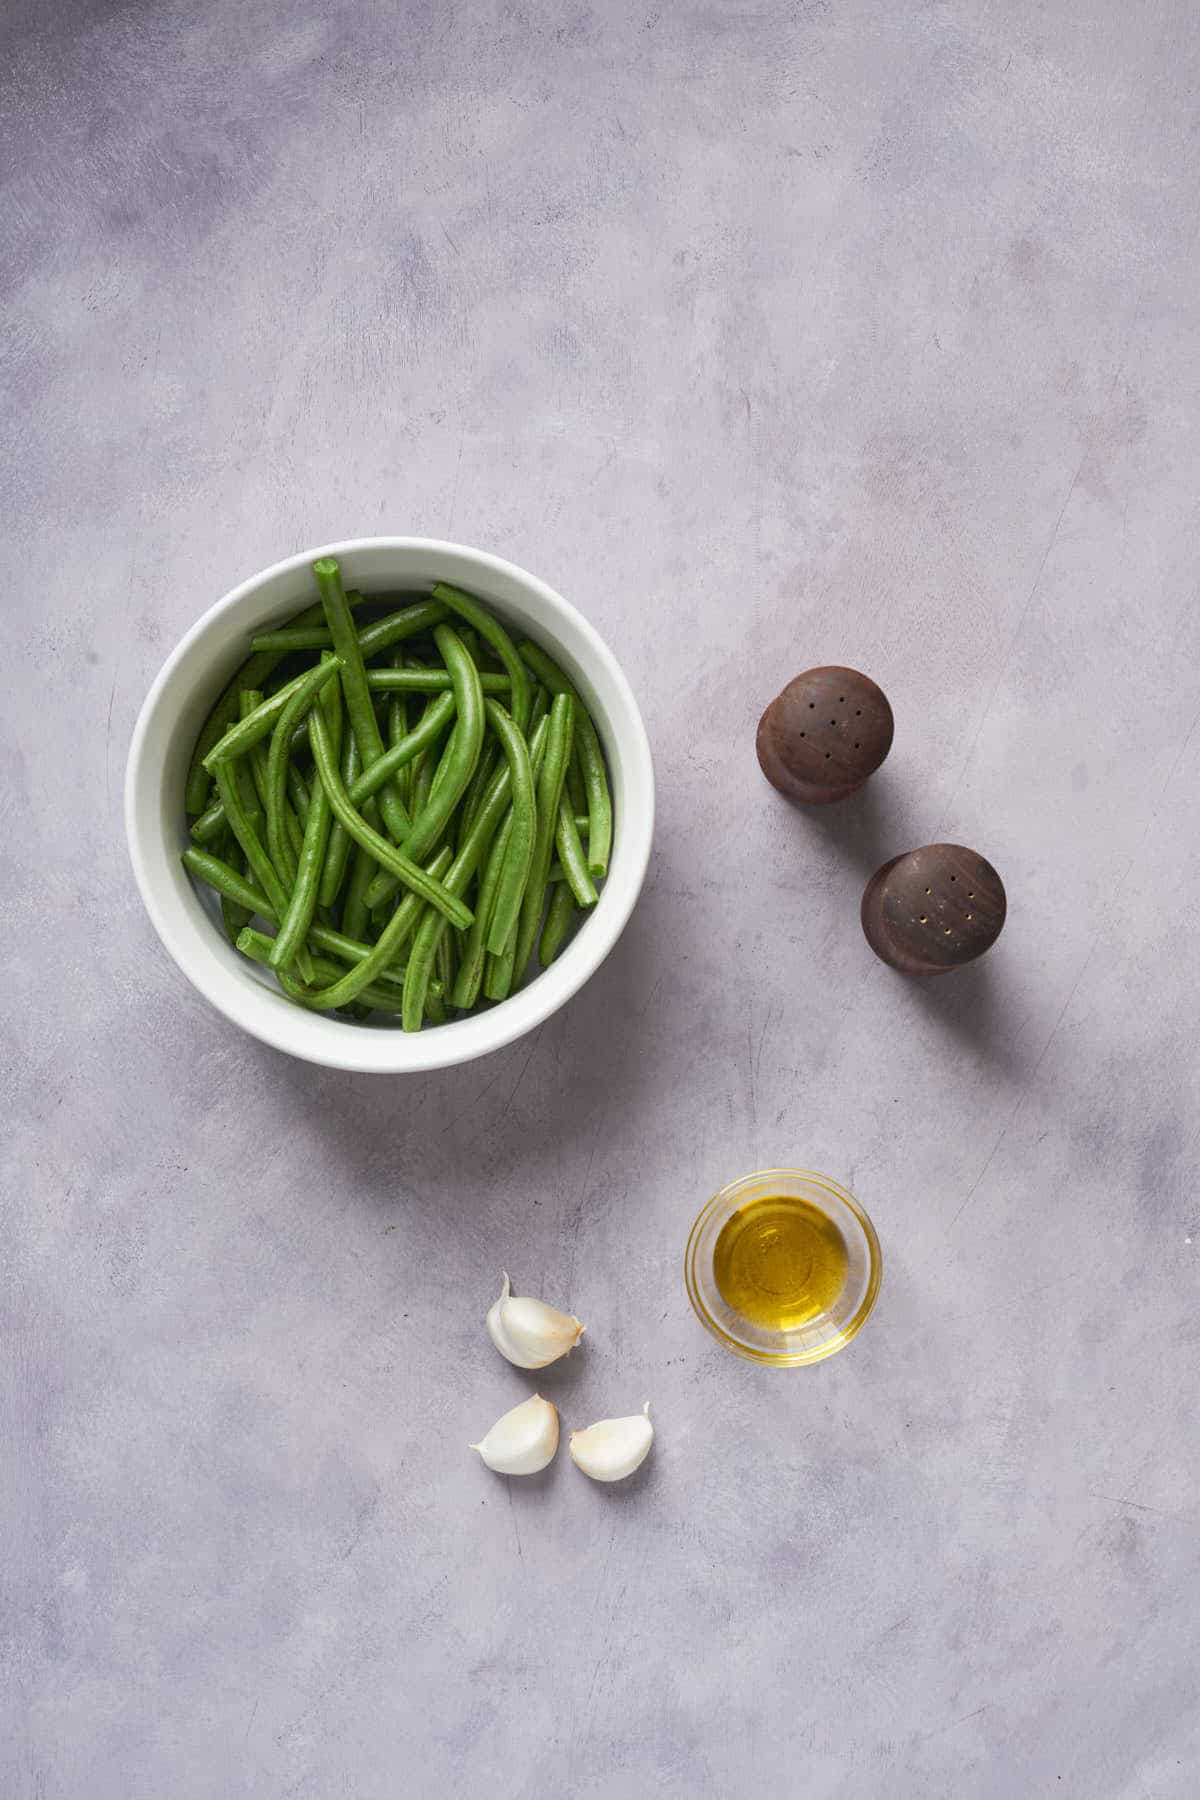 Ingredients to make air fryer garlic green beans.